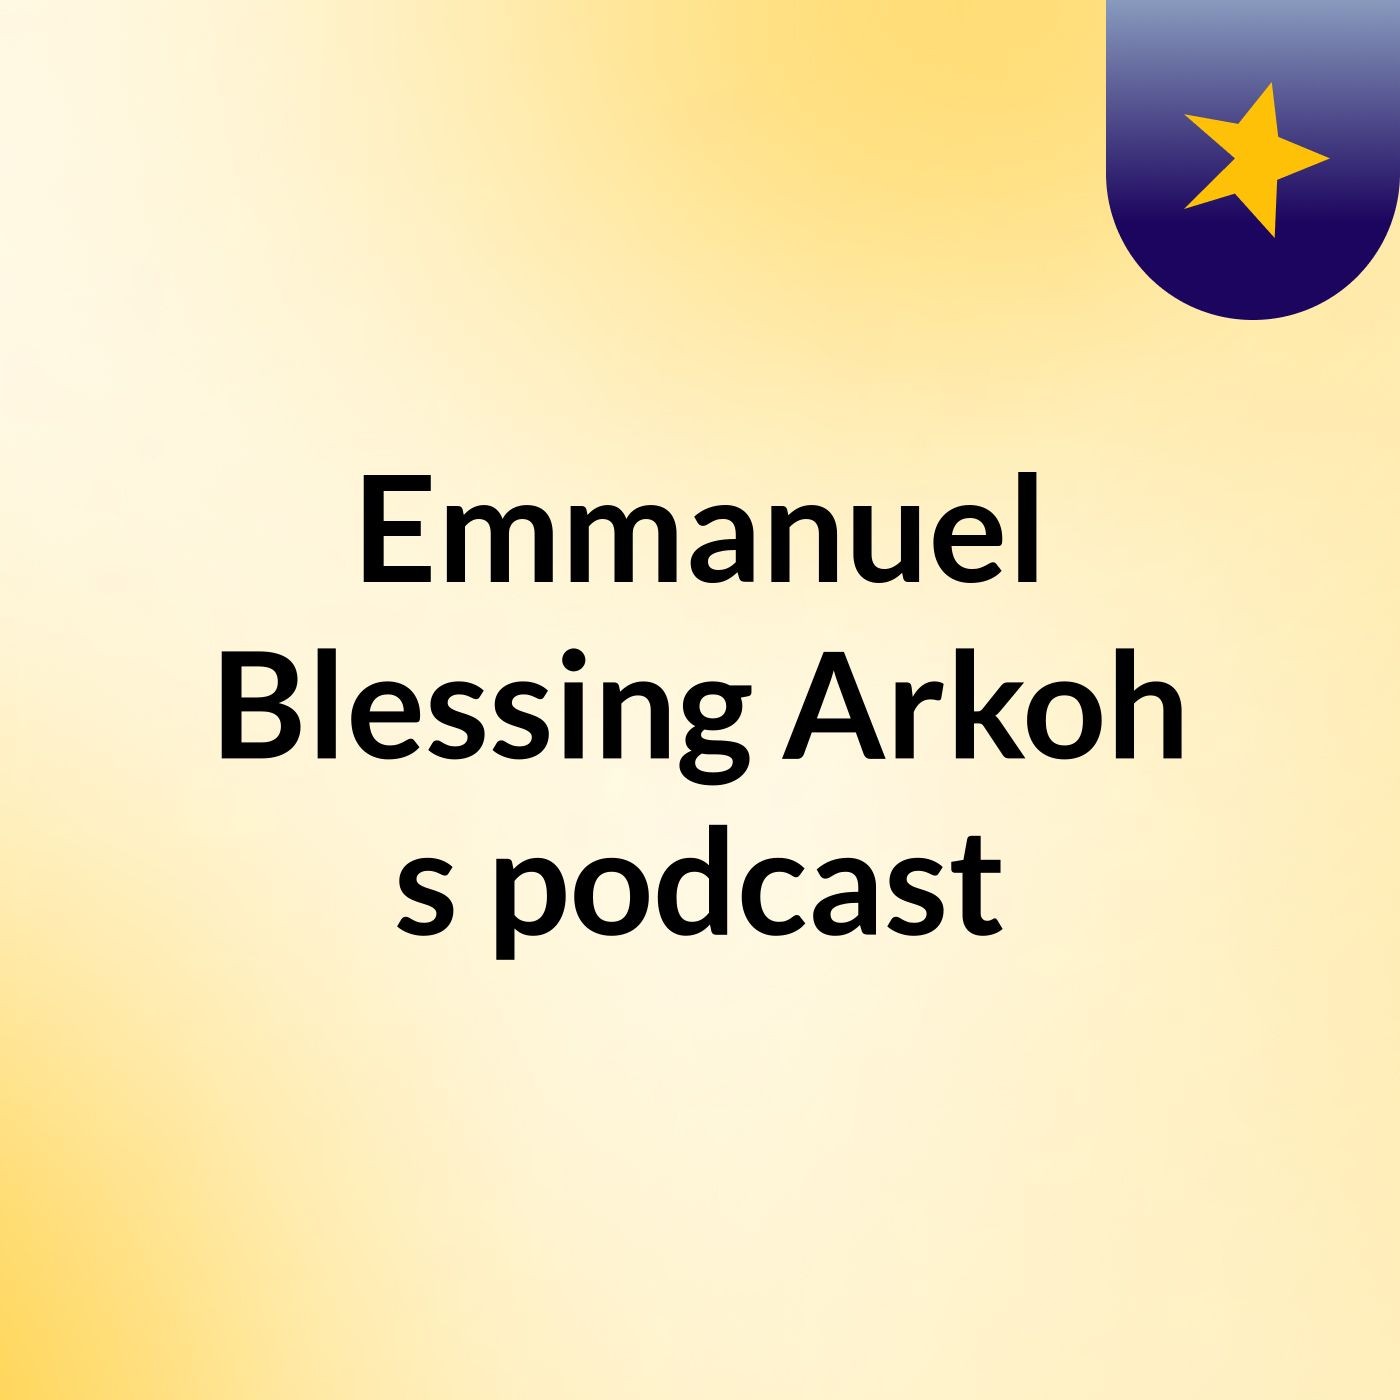 Episode 7 - Emmanuel Blessing Arkoh's podcast